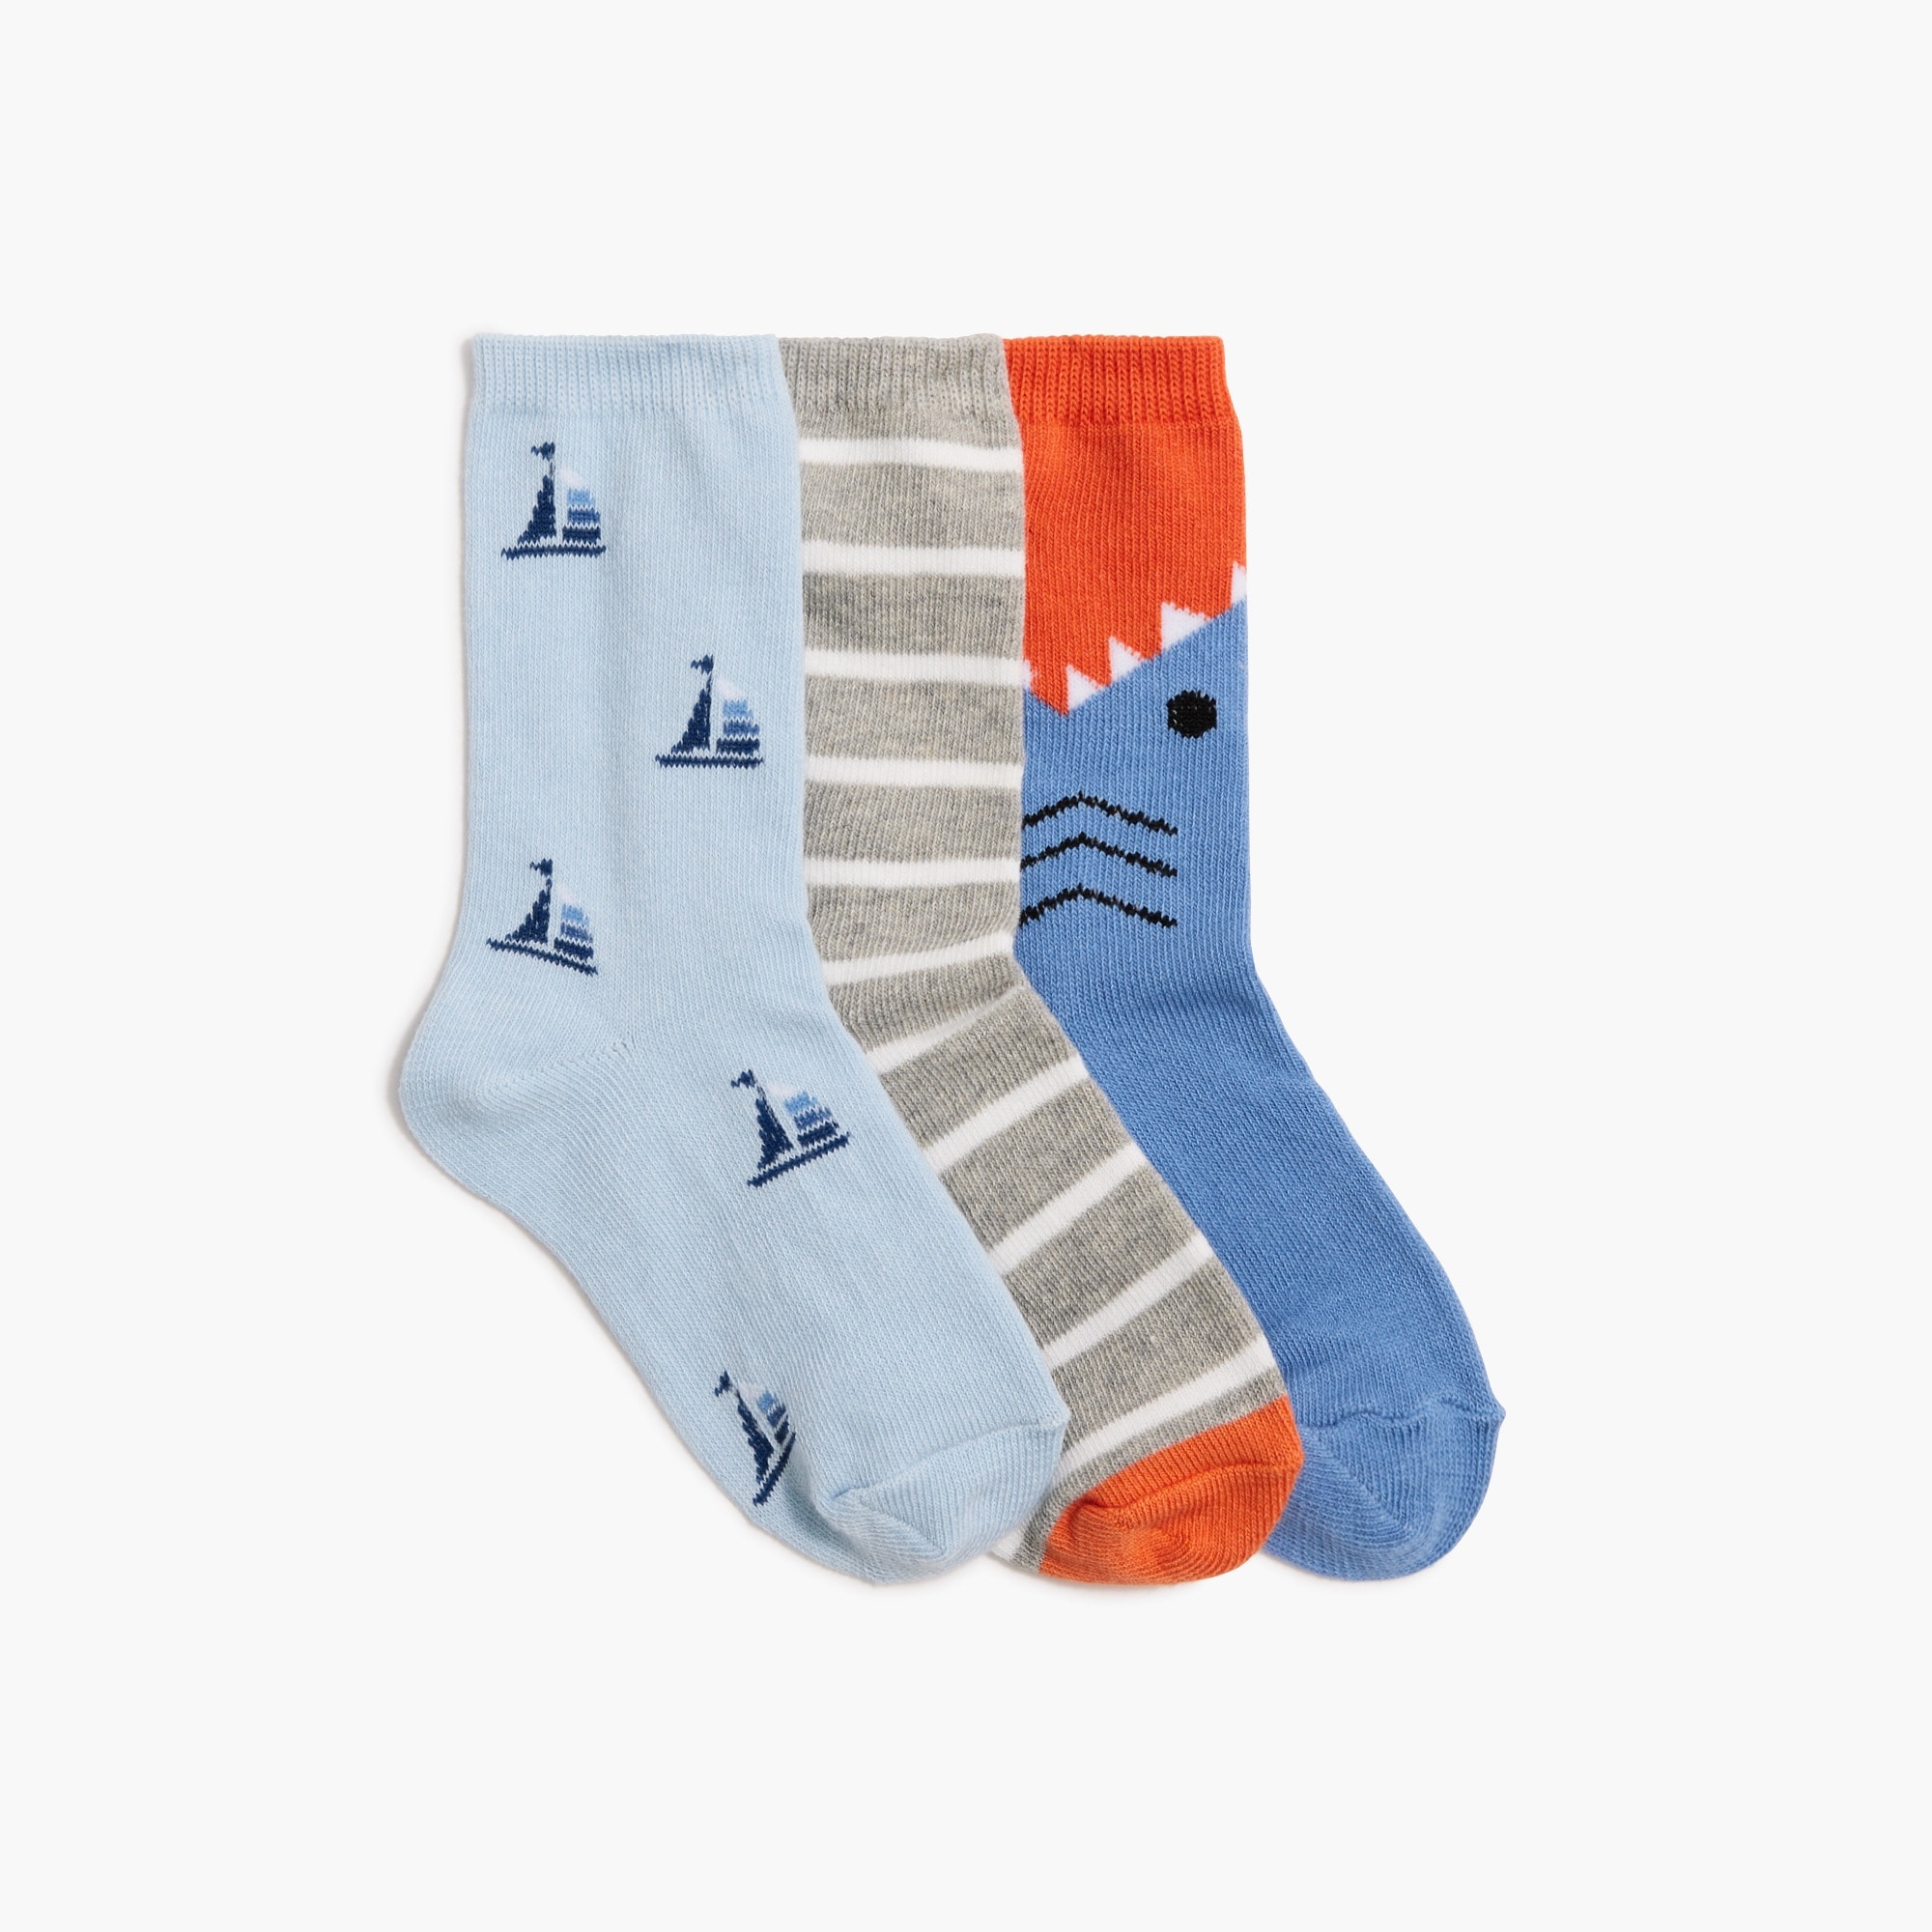 Boys' nautical trouser socks pack